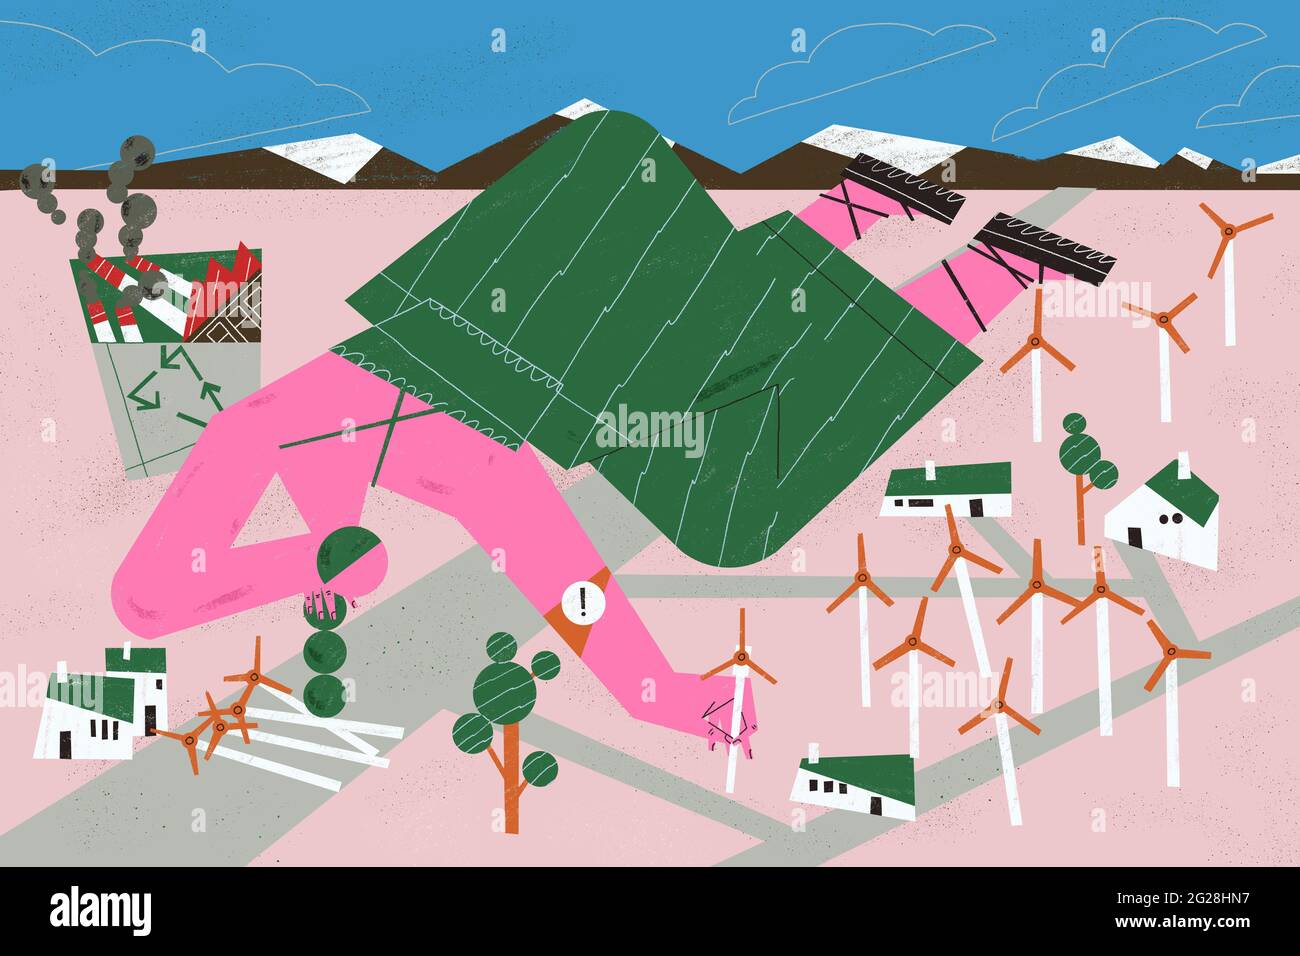 Nutzung von grüner Energie durch Windkraftanlagen als saubere Technologie und Produktion. Umweltschützer und Green Concept Illustration. Stockfoto